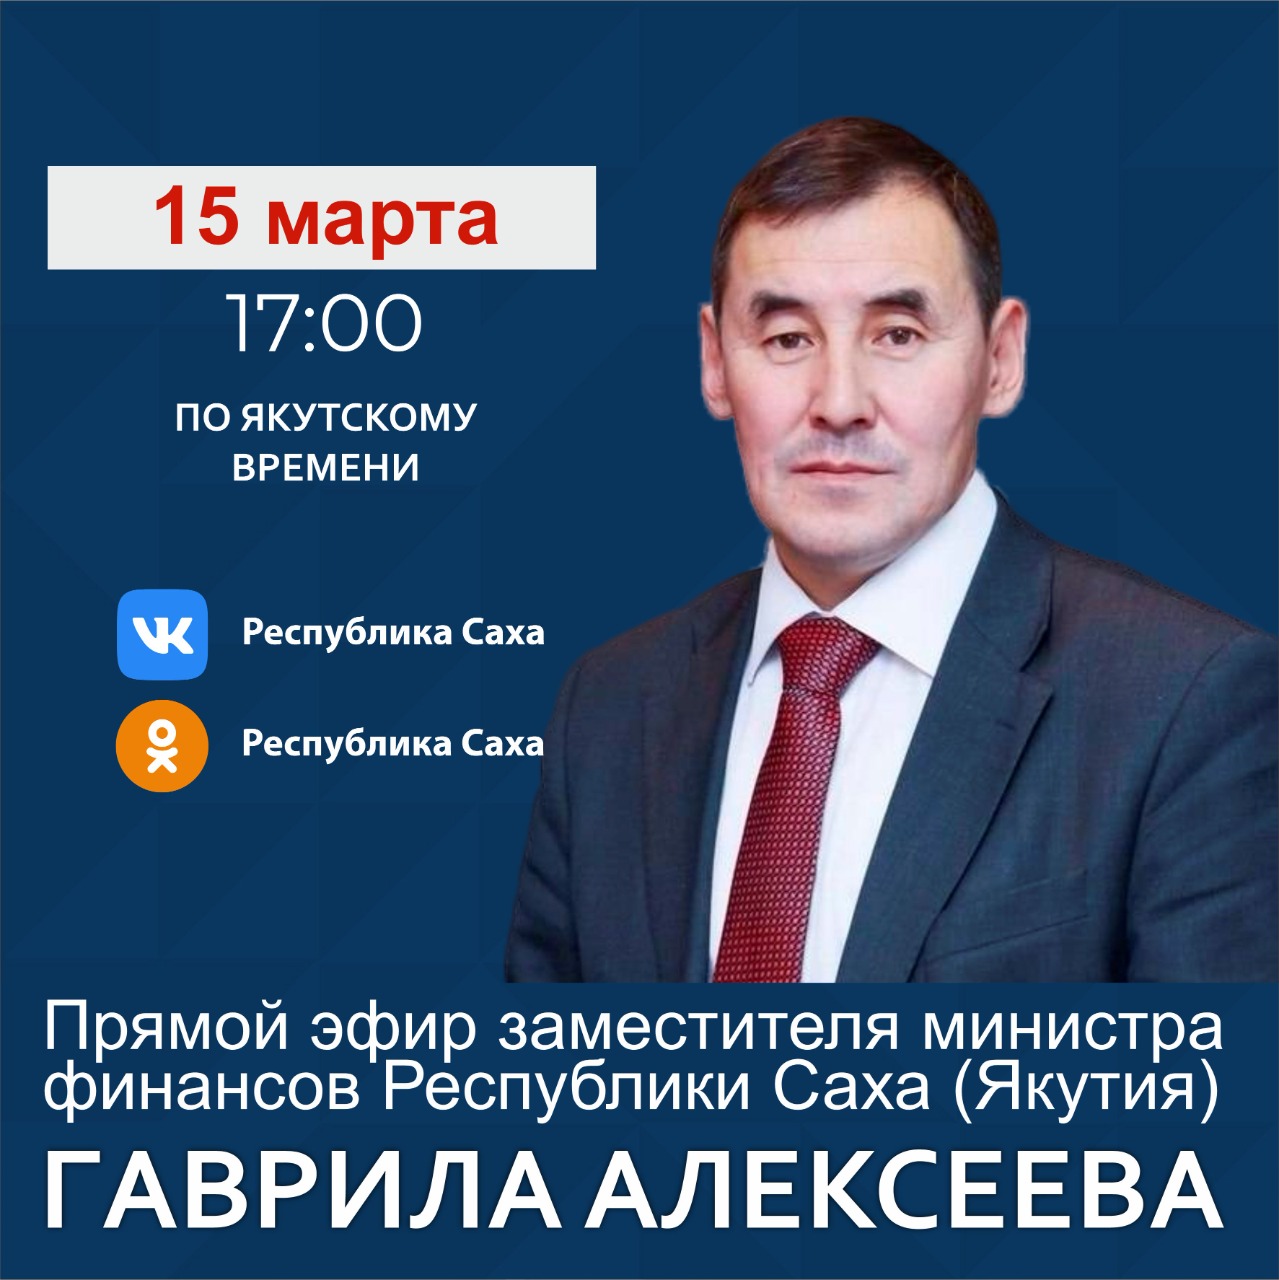 Замминистра финансов Якутии Гаврил Алексеев проведет прямой эфир в соцсетях 15 марта